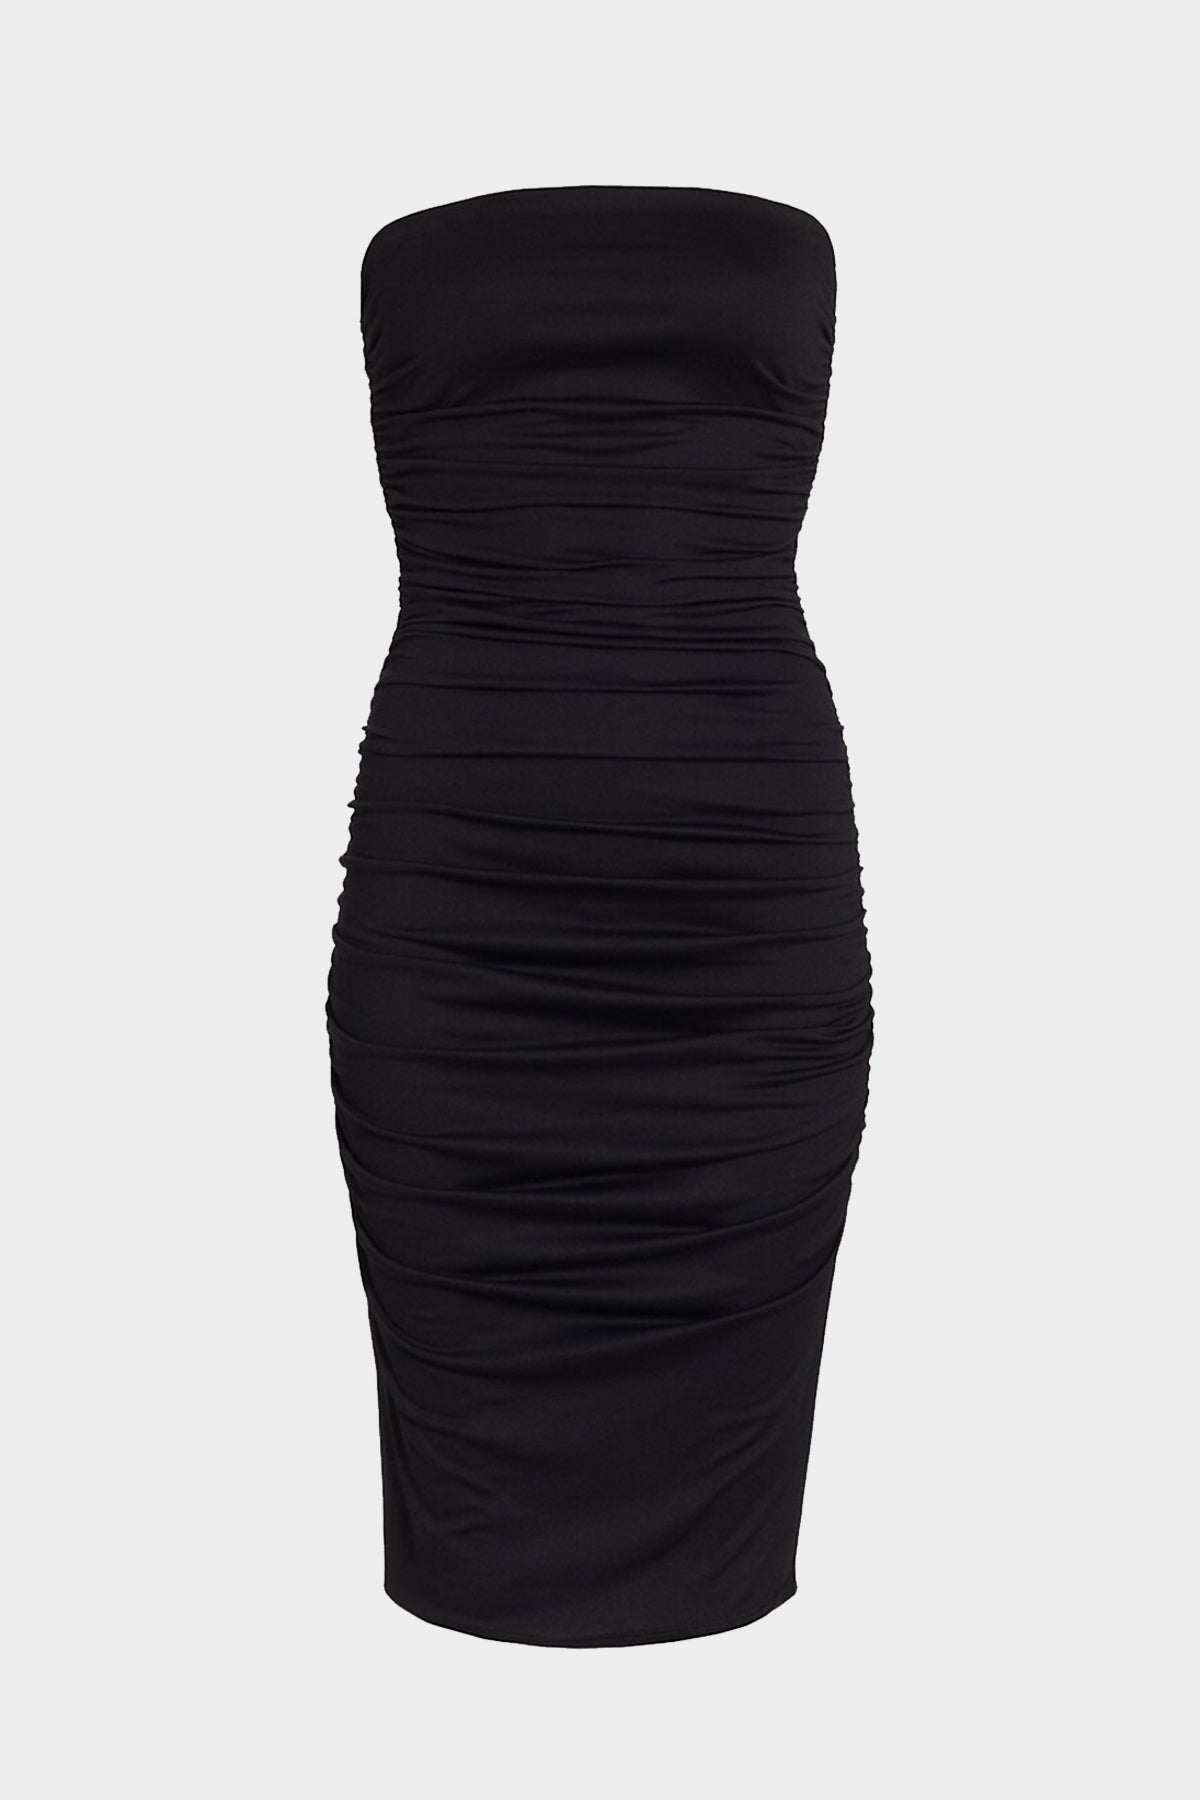 Tube Ruched Dress in Black - shop-olivia.com